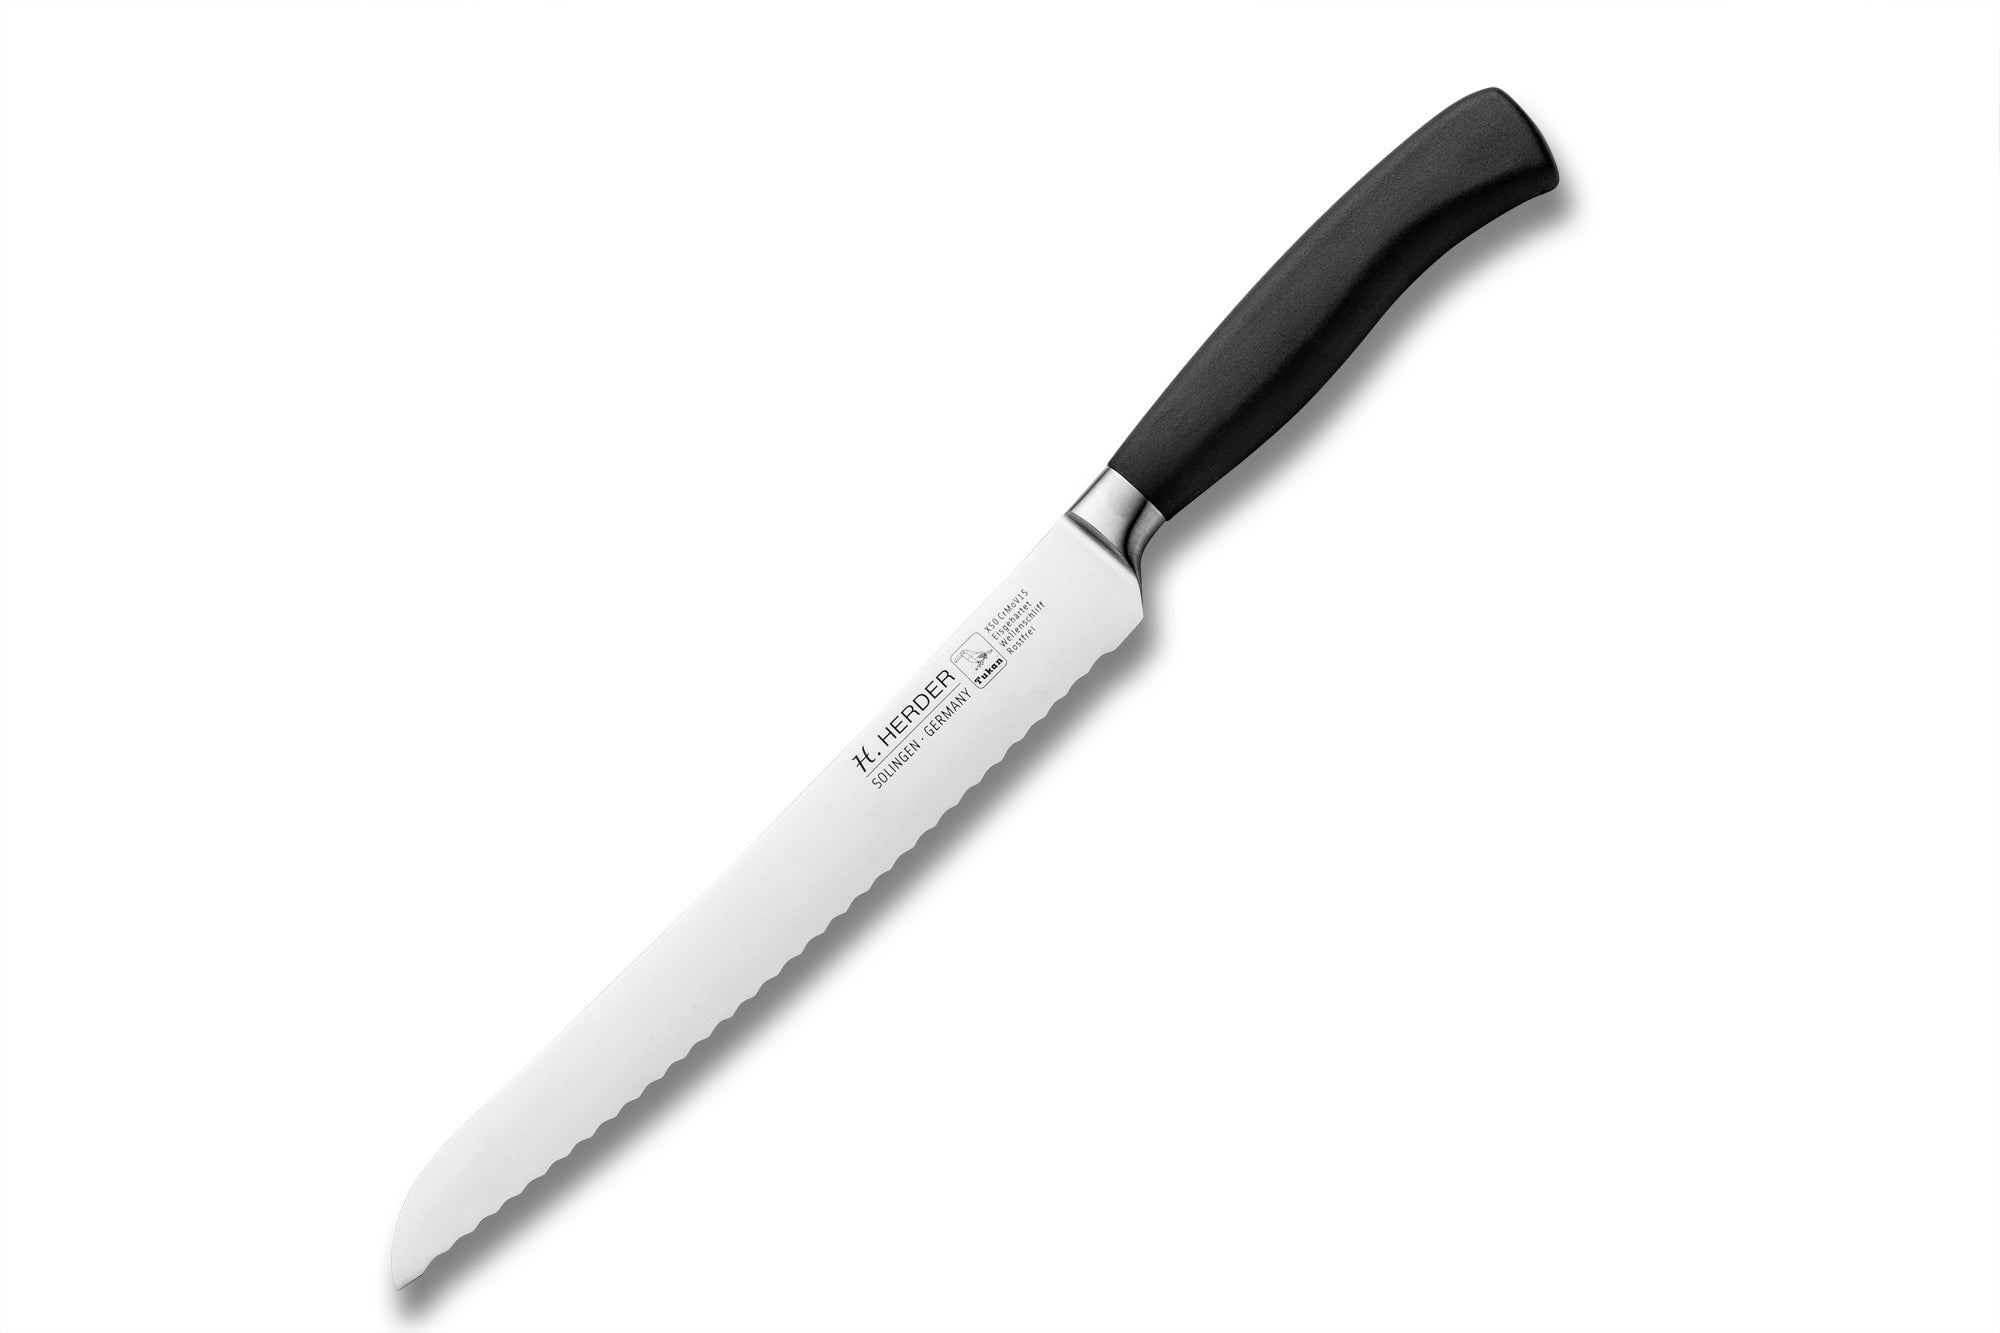 Cuchillo para pan Eterno Gastro, con mango, longitud de la hoja 20cm